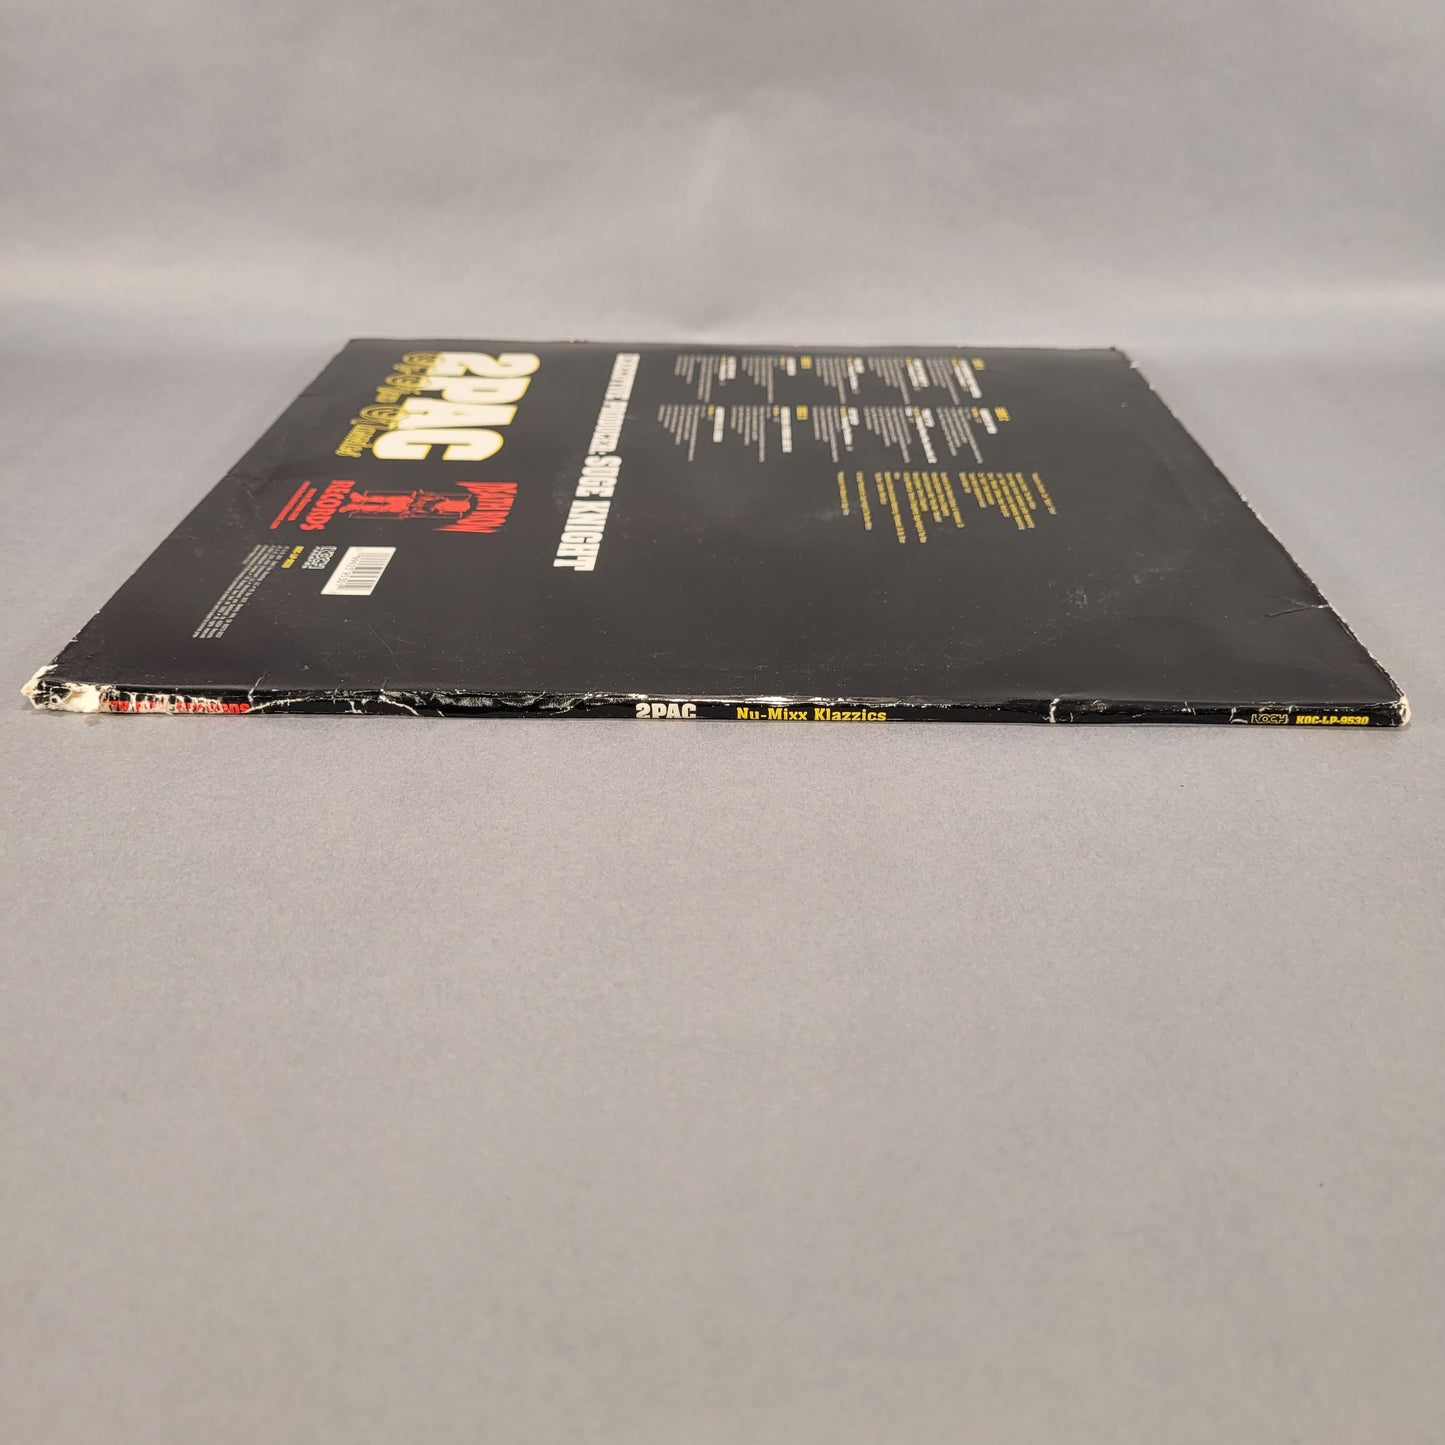 2Pac Nu-Mixx Klazzics Vinyl Record Album 2003 Release